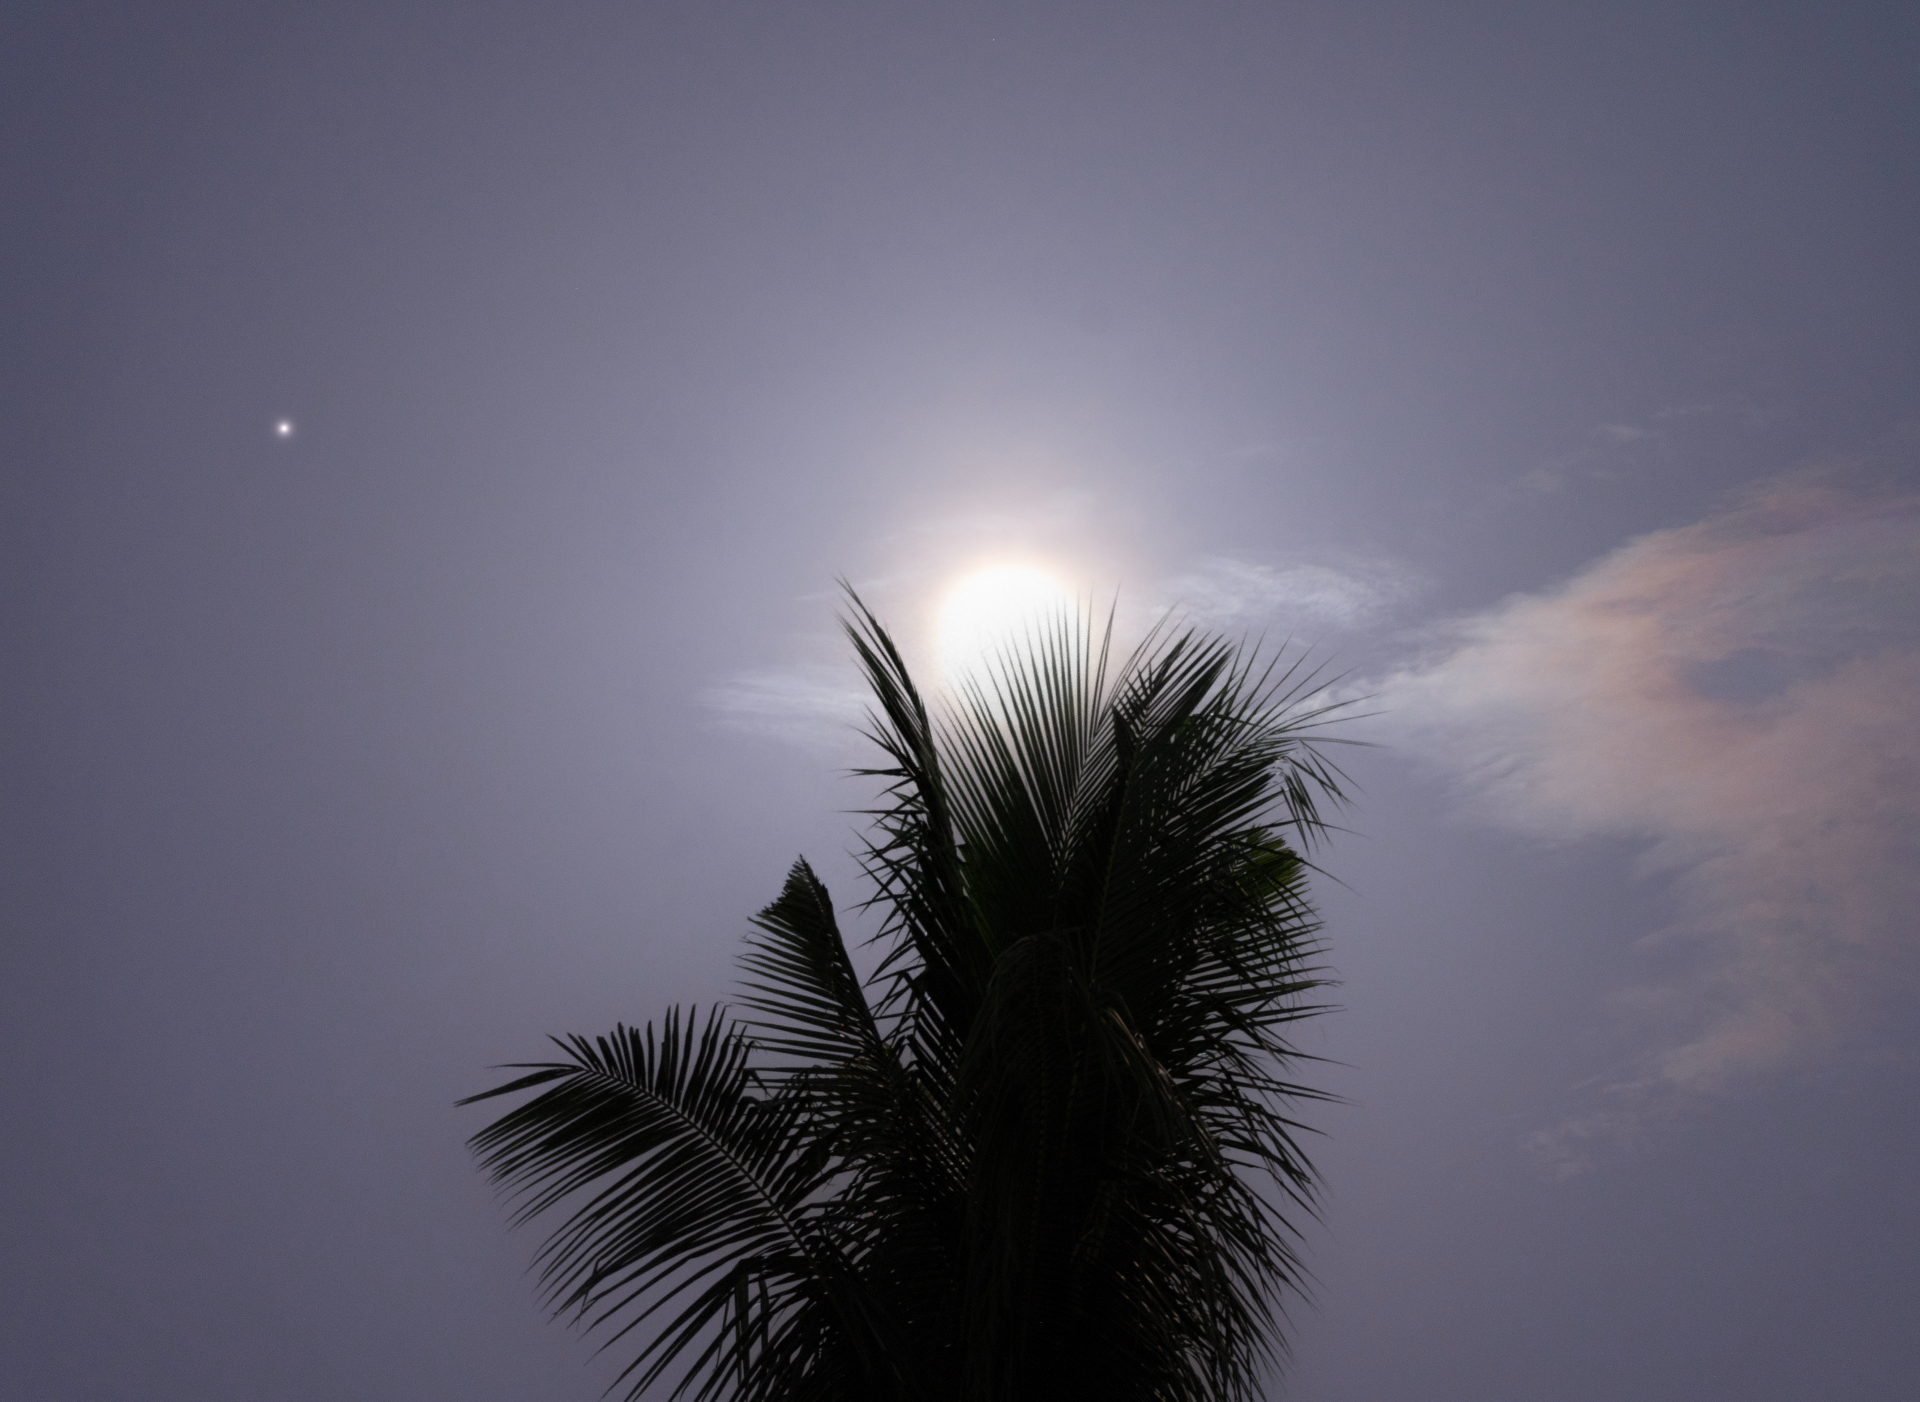 A gigante lua azul brilha intensamente atrás de uma palmeira, com o pequeno ponto de Saturno visível à esquerda da lua.